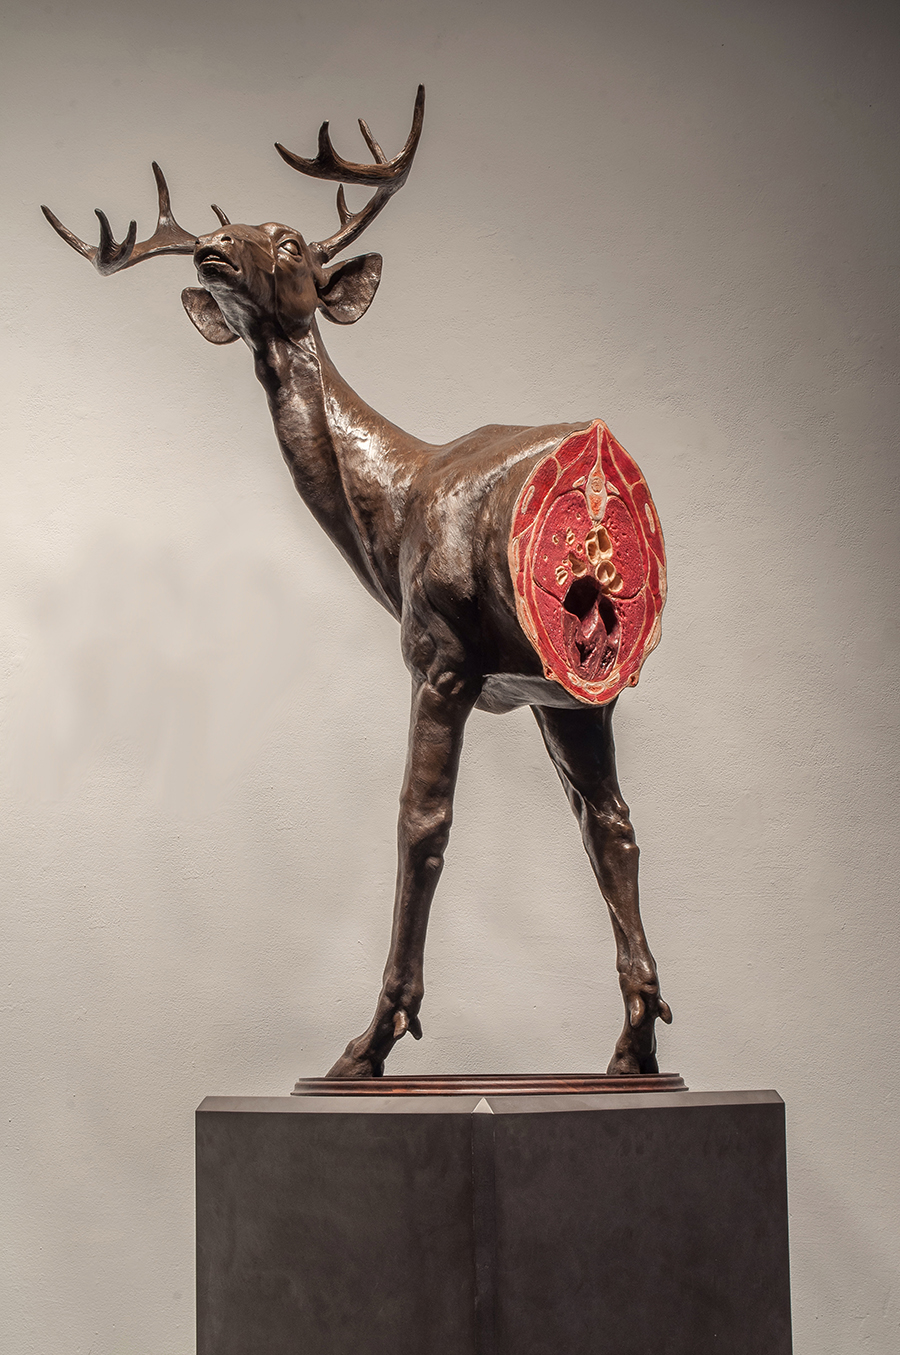 Untitled Deer Study by Jesse Berlin